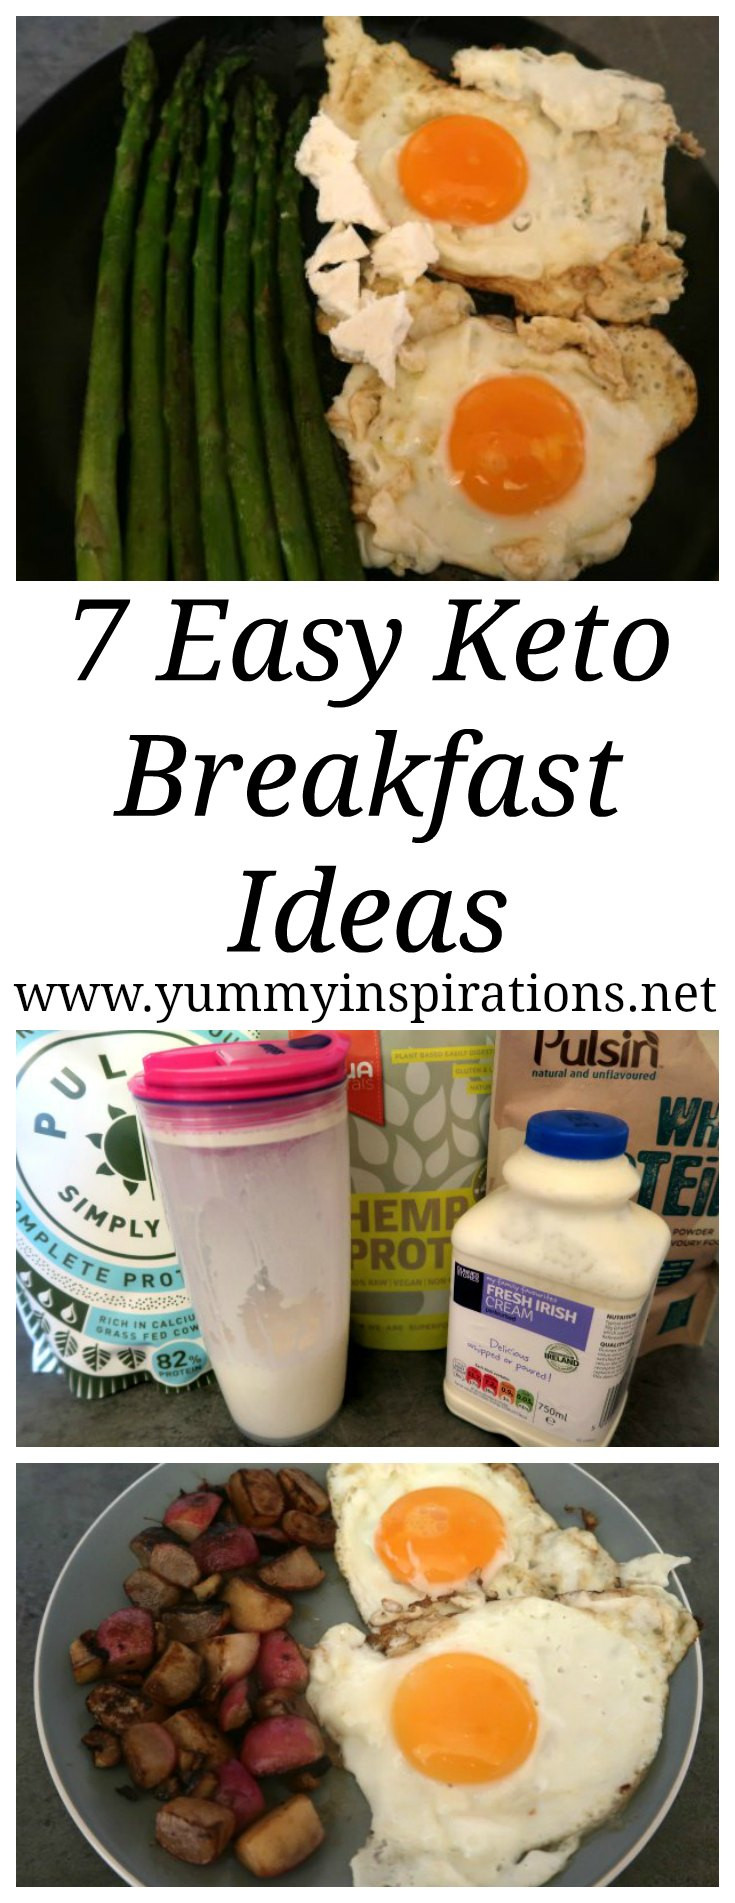 Keto Breakfast Ideas Easy
 7 Easy Keto Breakfast Ideas Low Carb & Ketogenic Diet